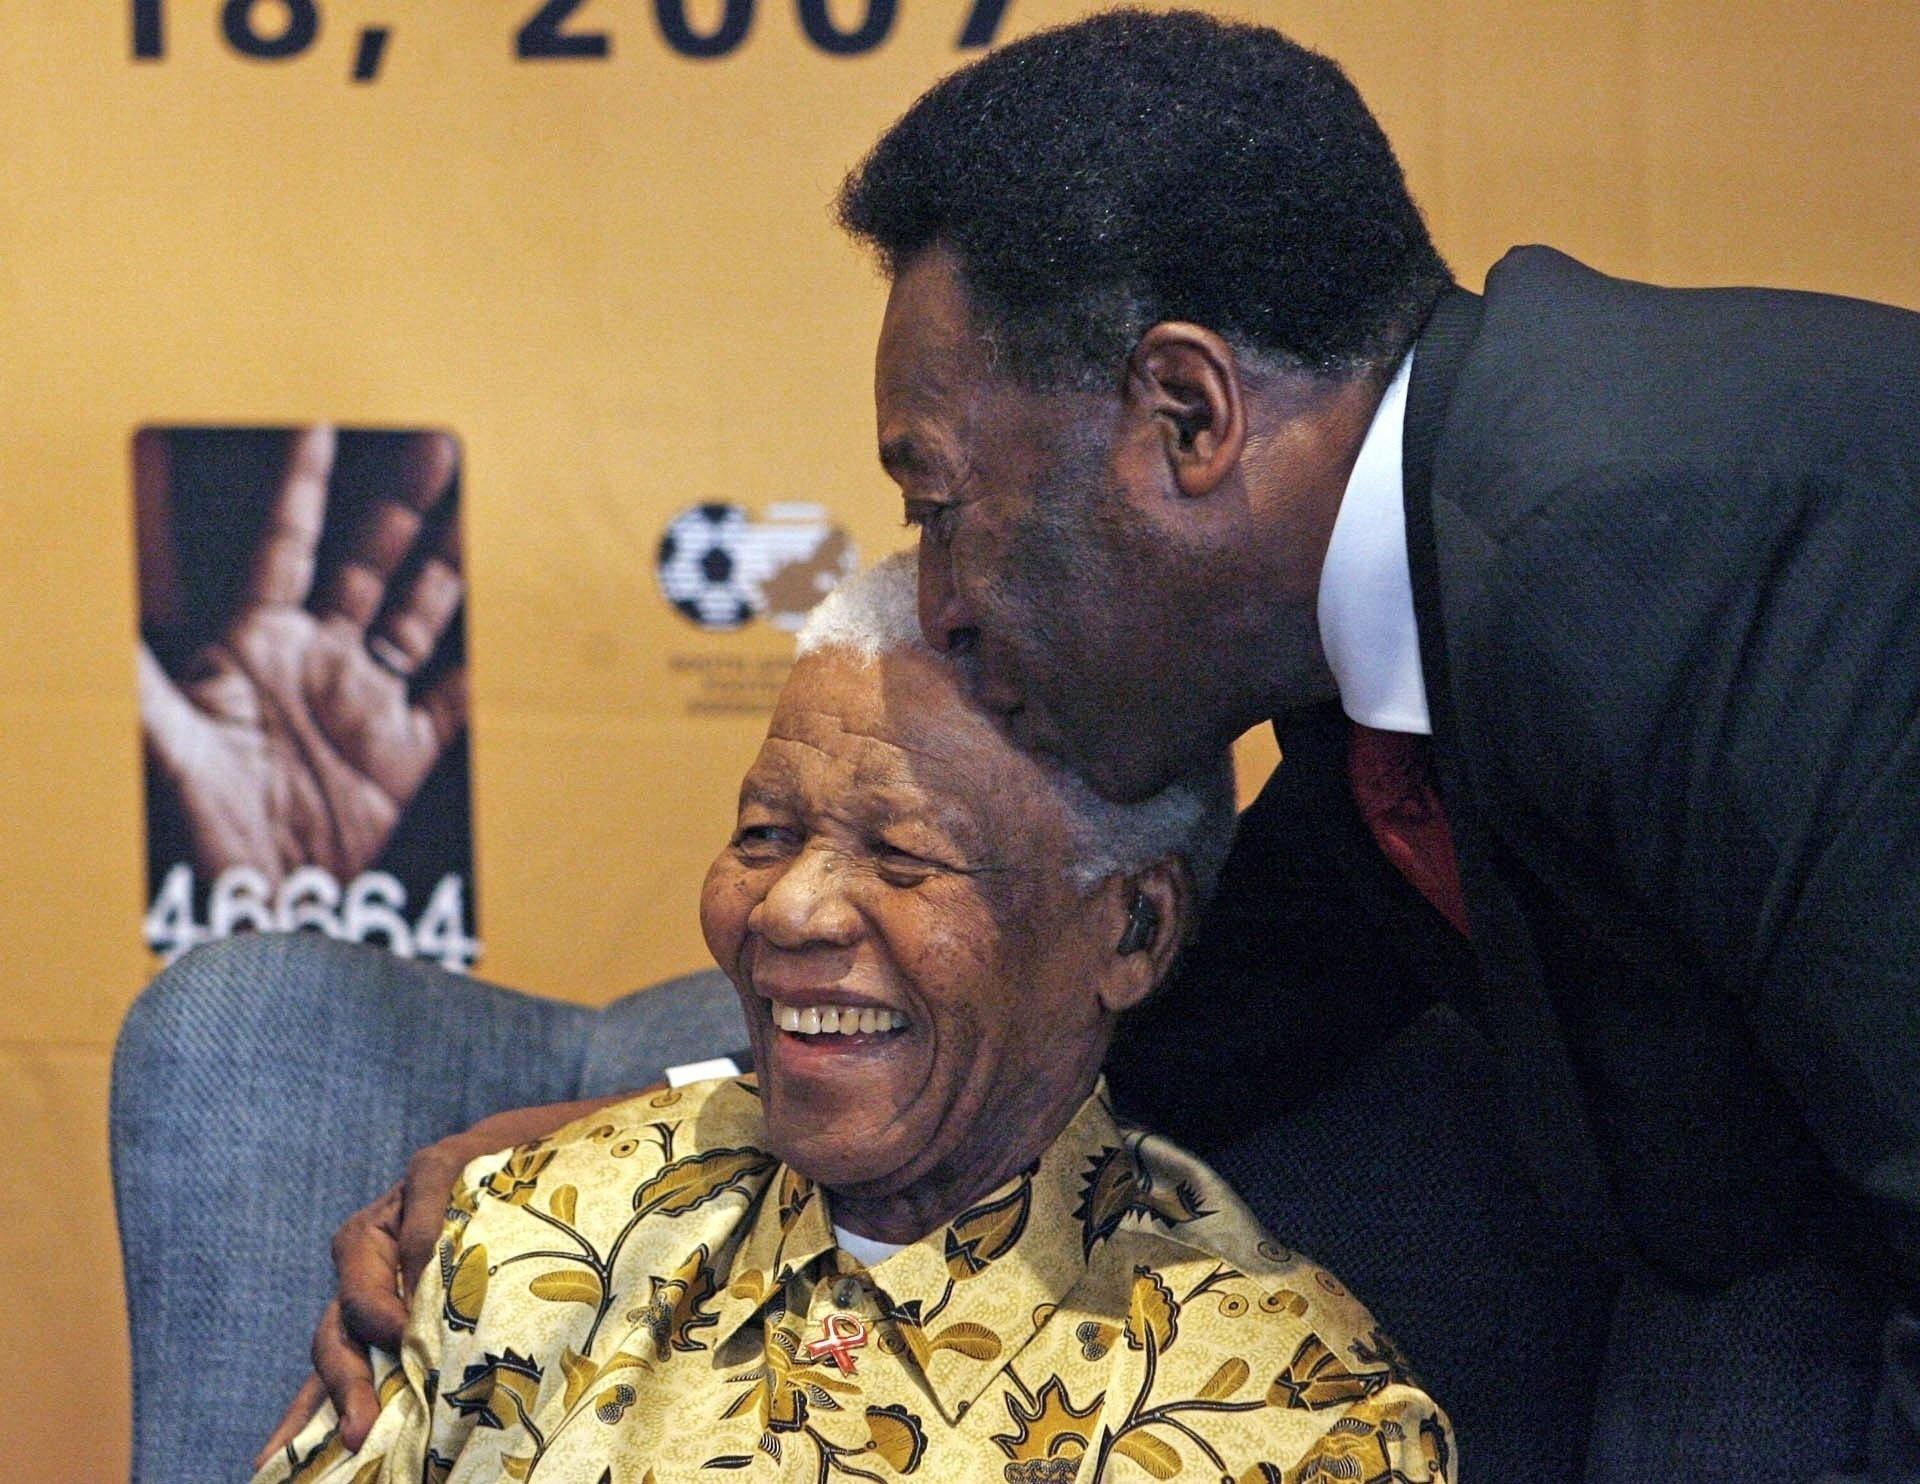 Pelé beija a cabeça de Nelson Mandela na véspera da partida amistosa "90 minutos por Mandela" em comemoração aos 89 anos do ex-presidente da África do Sul, em Johannesburgo, África do Sul. - Chris Ricco/AFP